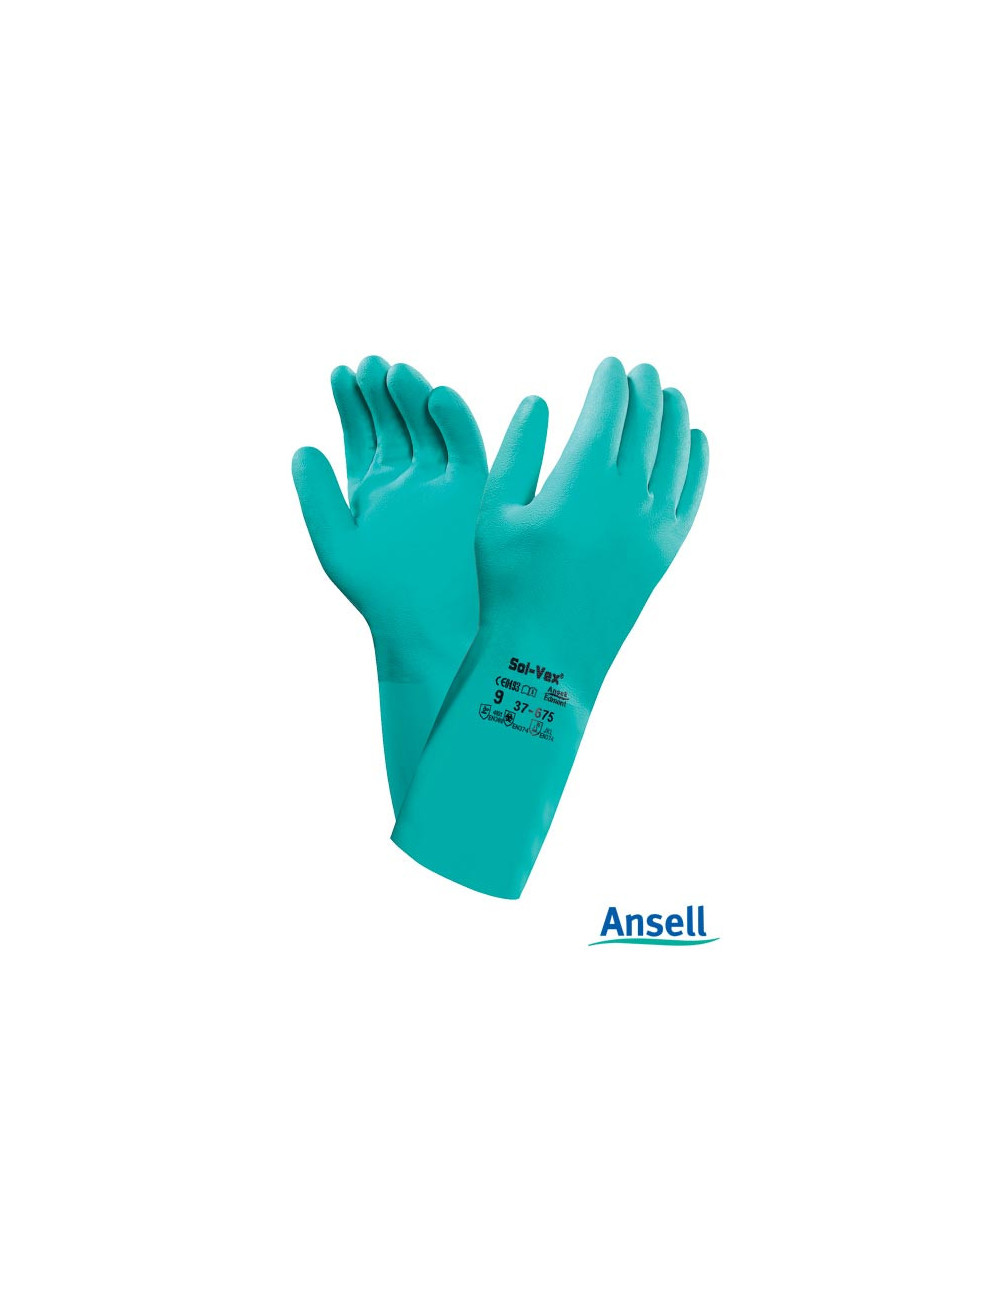 Rasolvex37-675 Schutzhandschuhe von Ansell grün